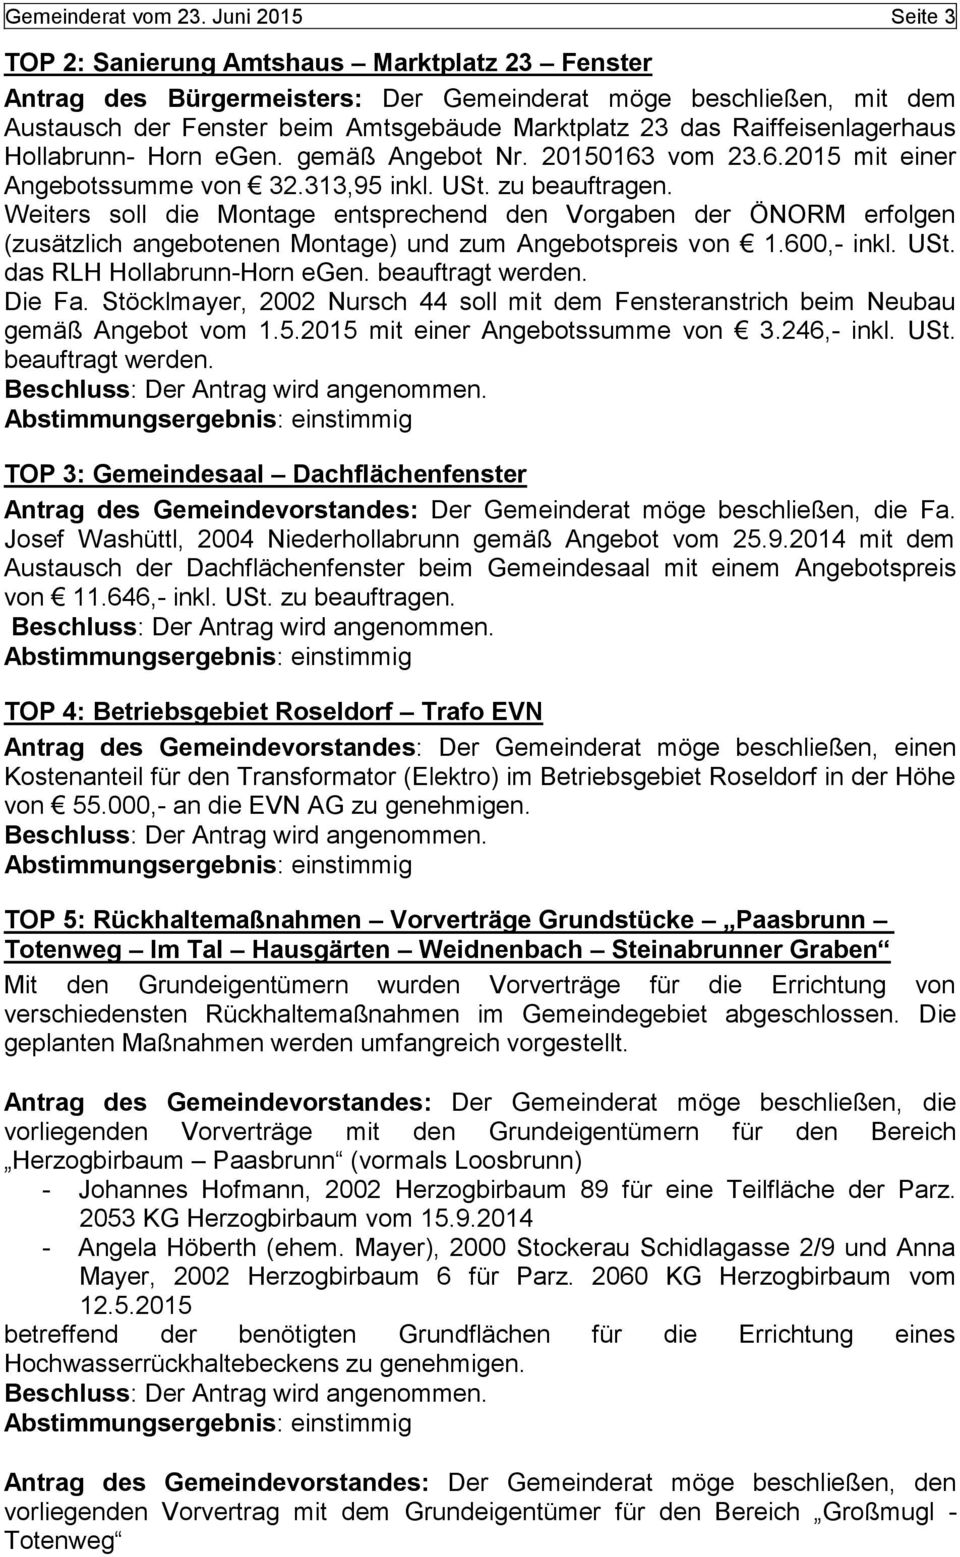 Raiffeisenlagerhaus Hollabrunn- Horn egen. gemäß Angebot Nr. 20150163 vom 23.6.2015 mit einer Angebotssumme von 32.313,95 inkl. USt. zu beauftragen.